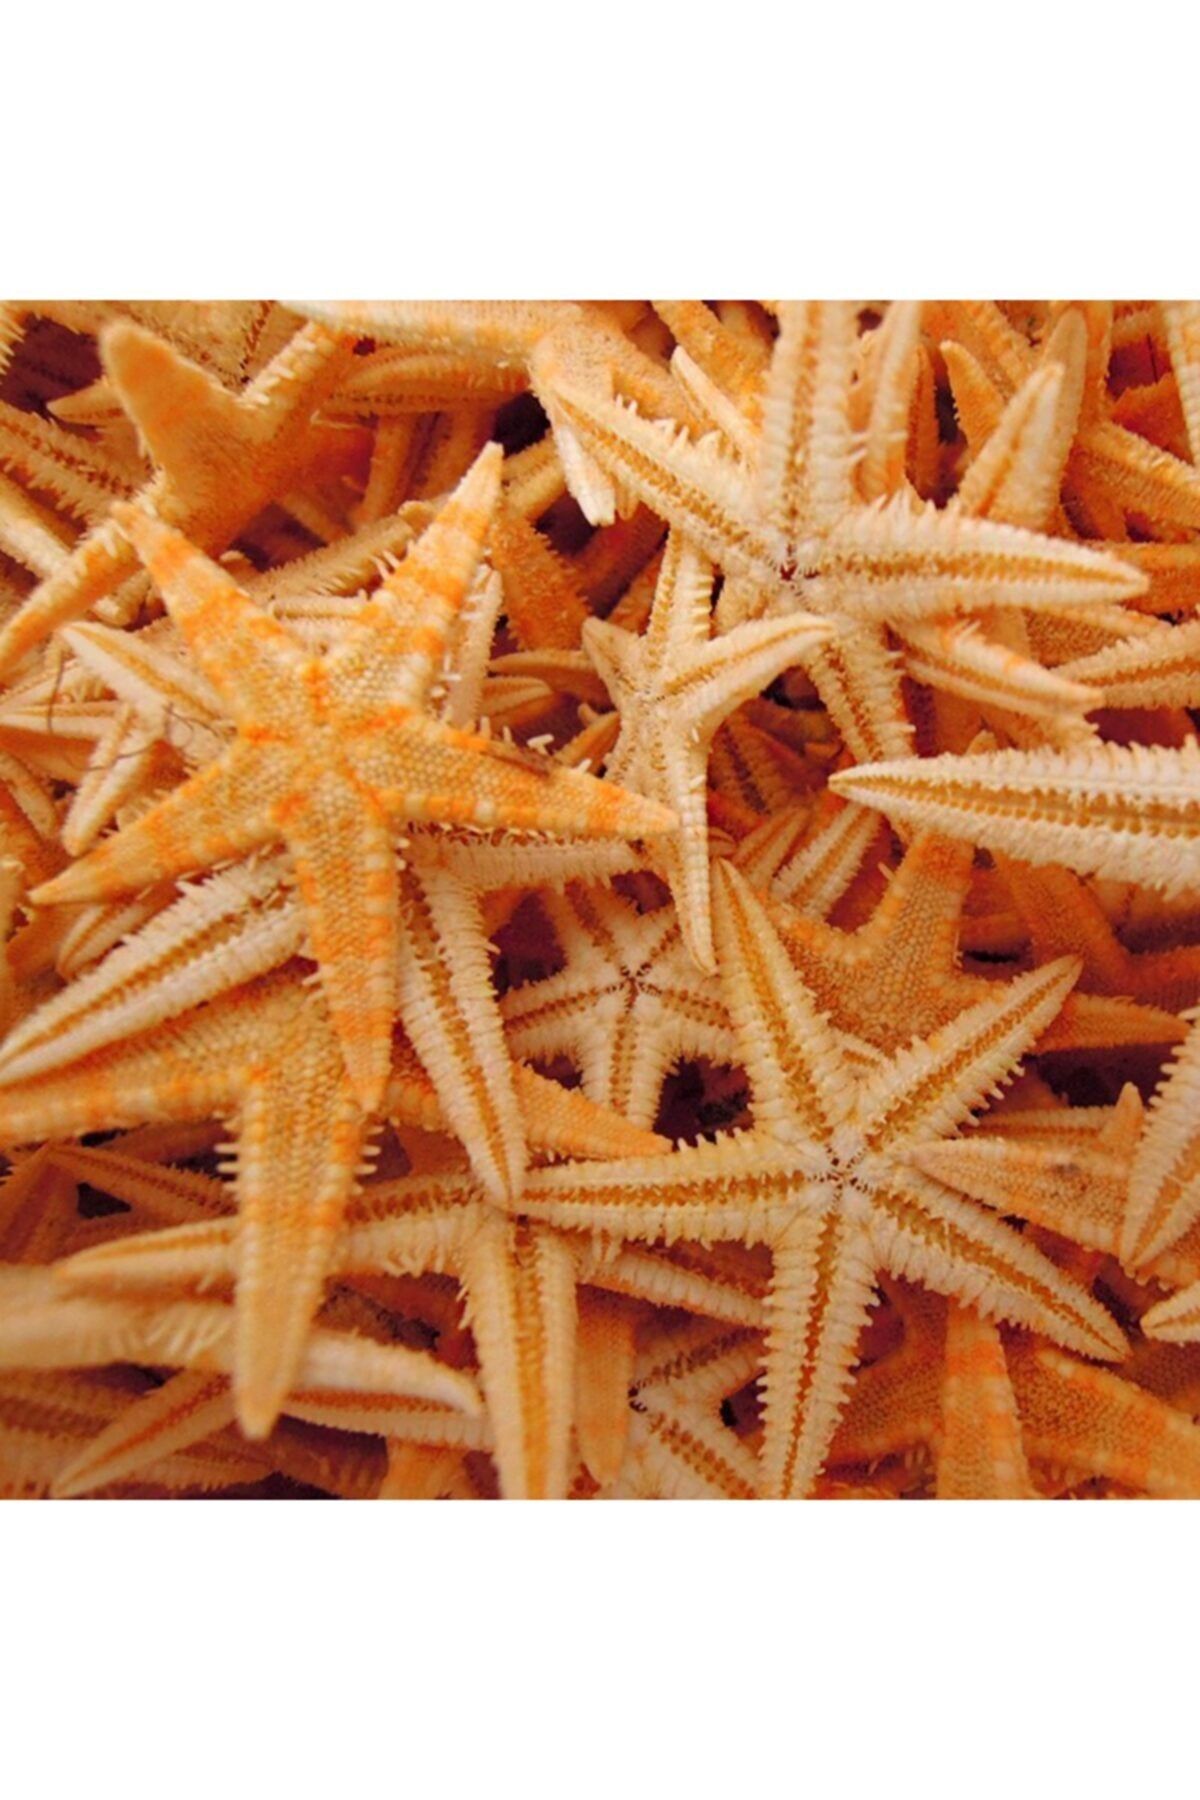 Aker Hediyelik Kaliteli Deniz Yıldızı 30 Adet 7cmx10cm Güzel Deniz Yıldızları Tasarım Harikası Malzemeler